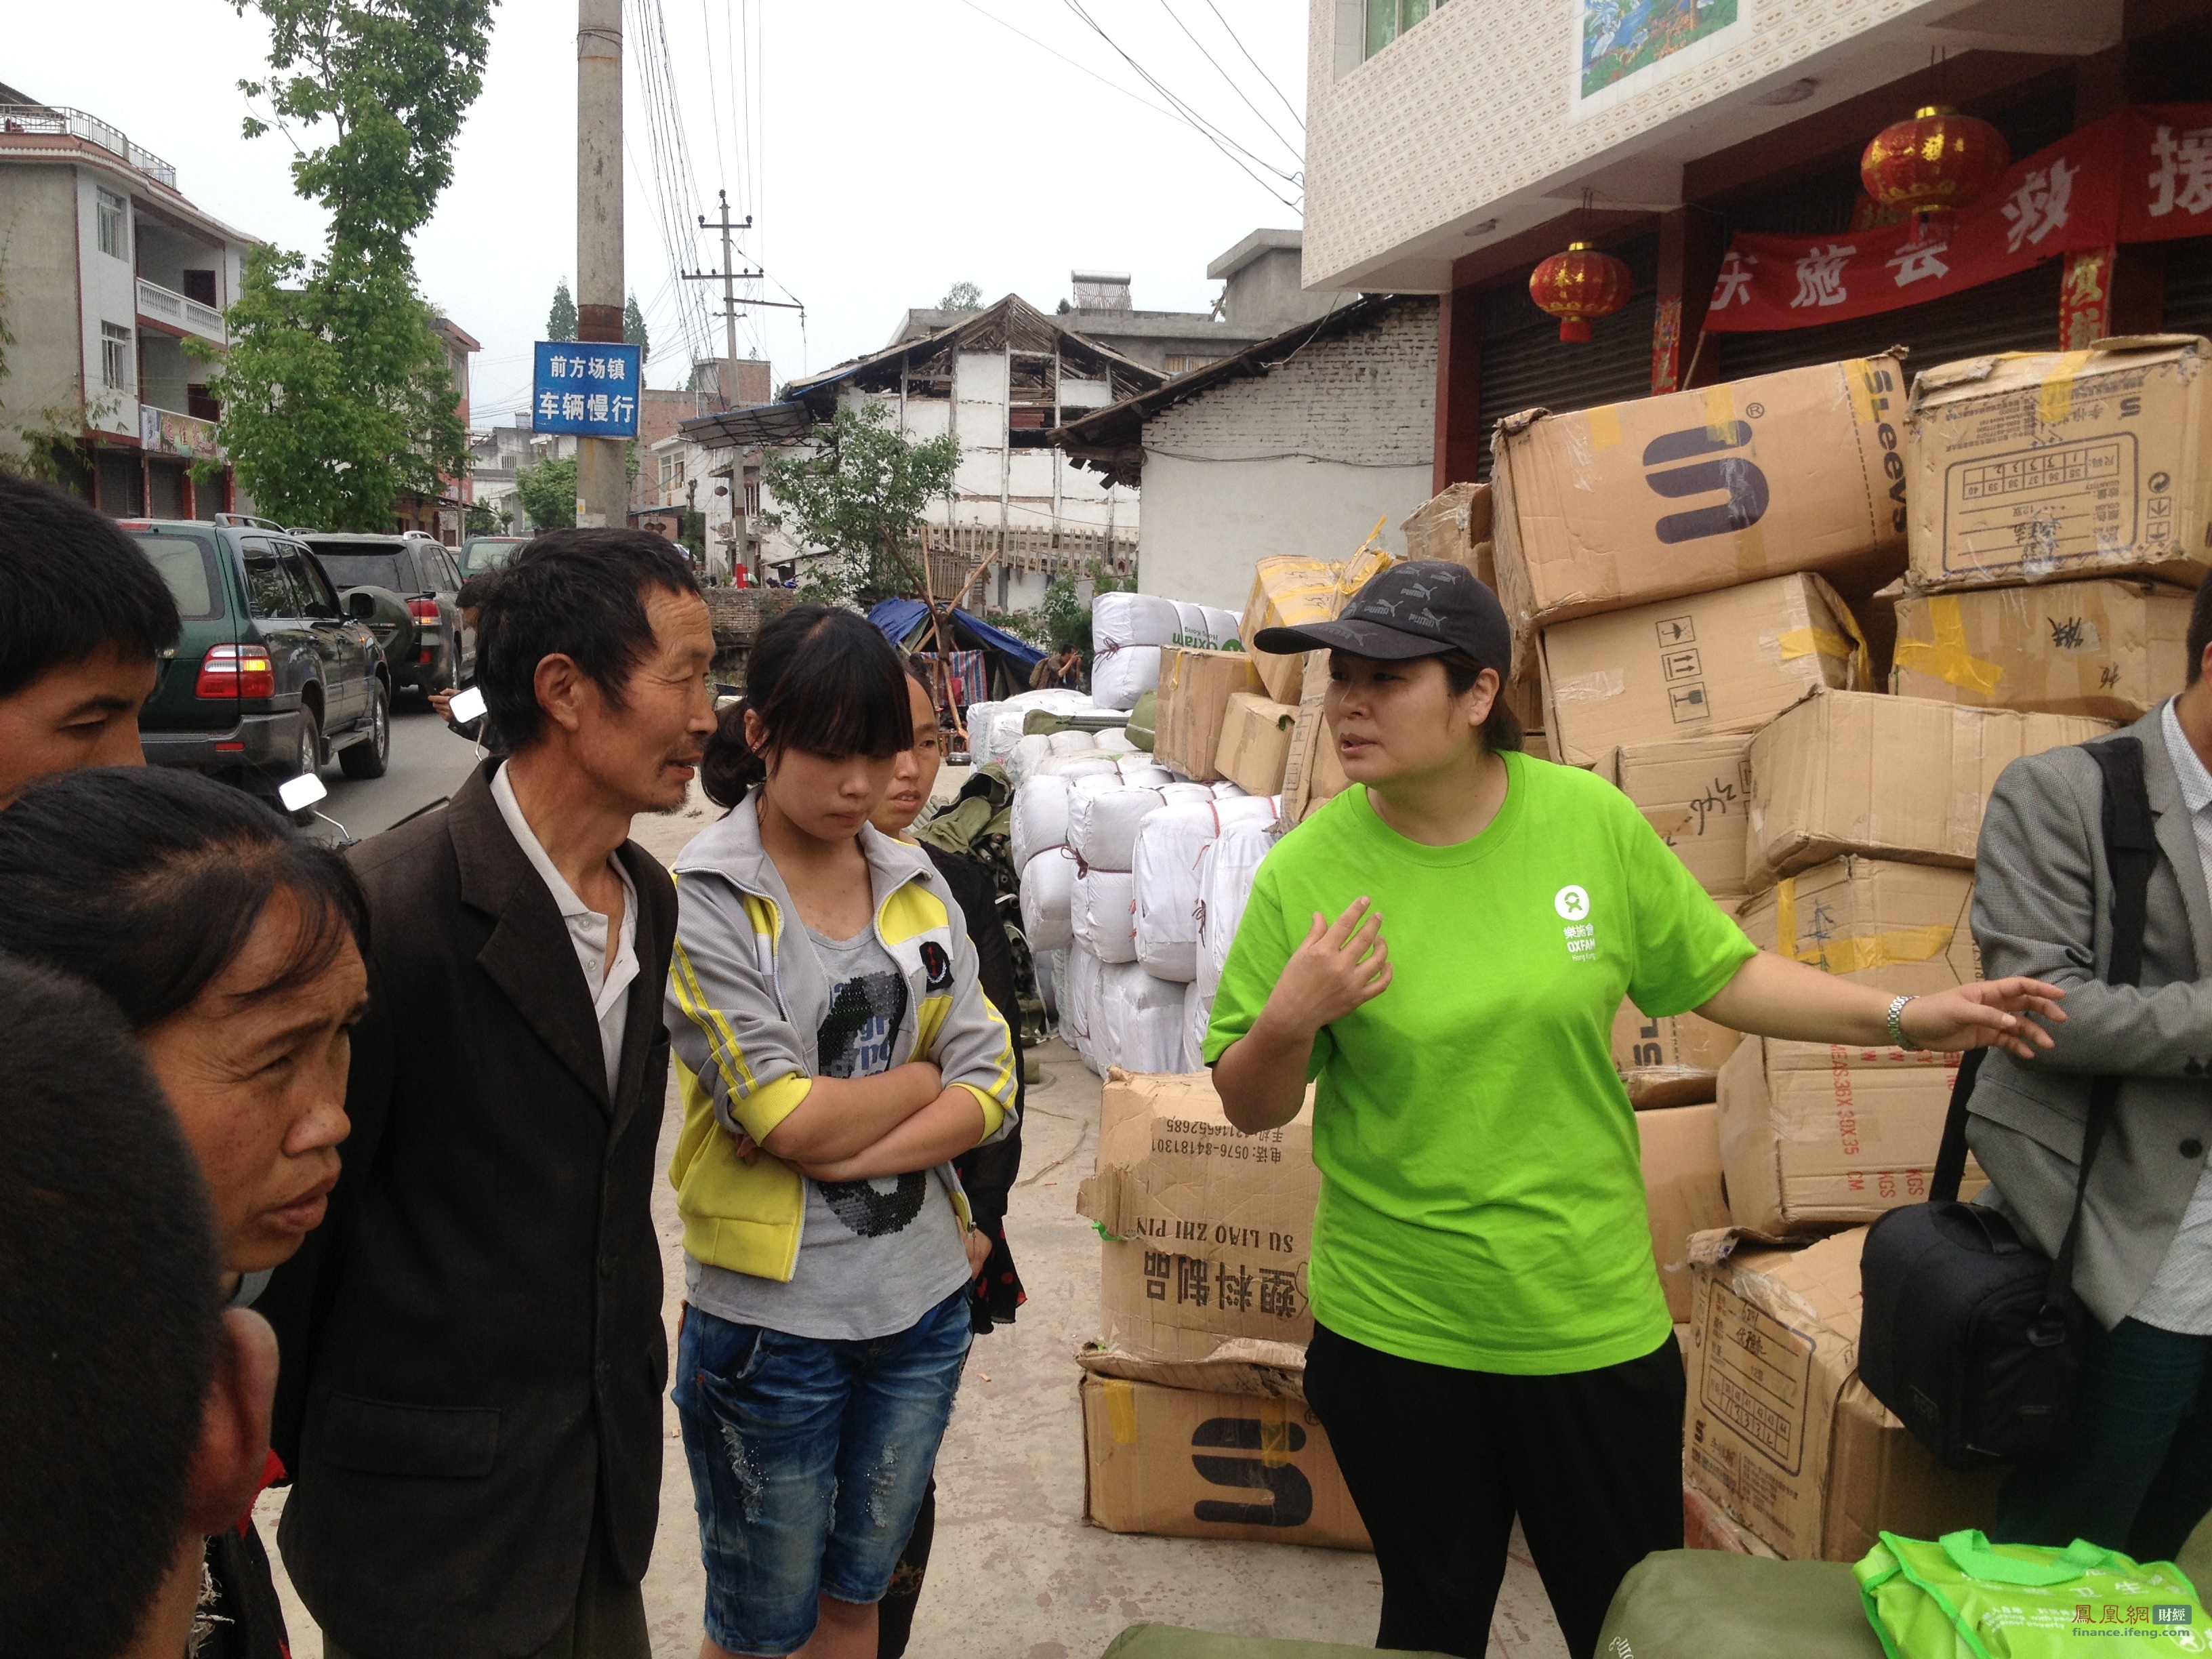 乐施会、壹基金、红十字会在地震现场发放物资